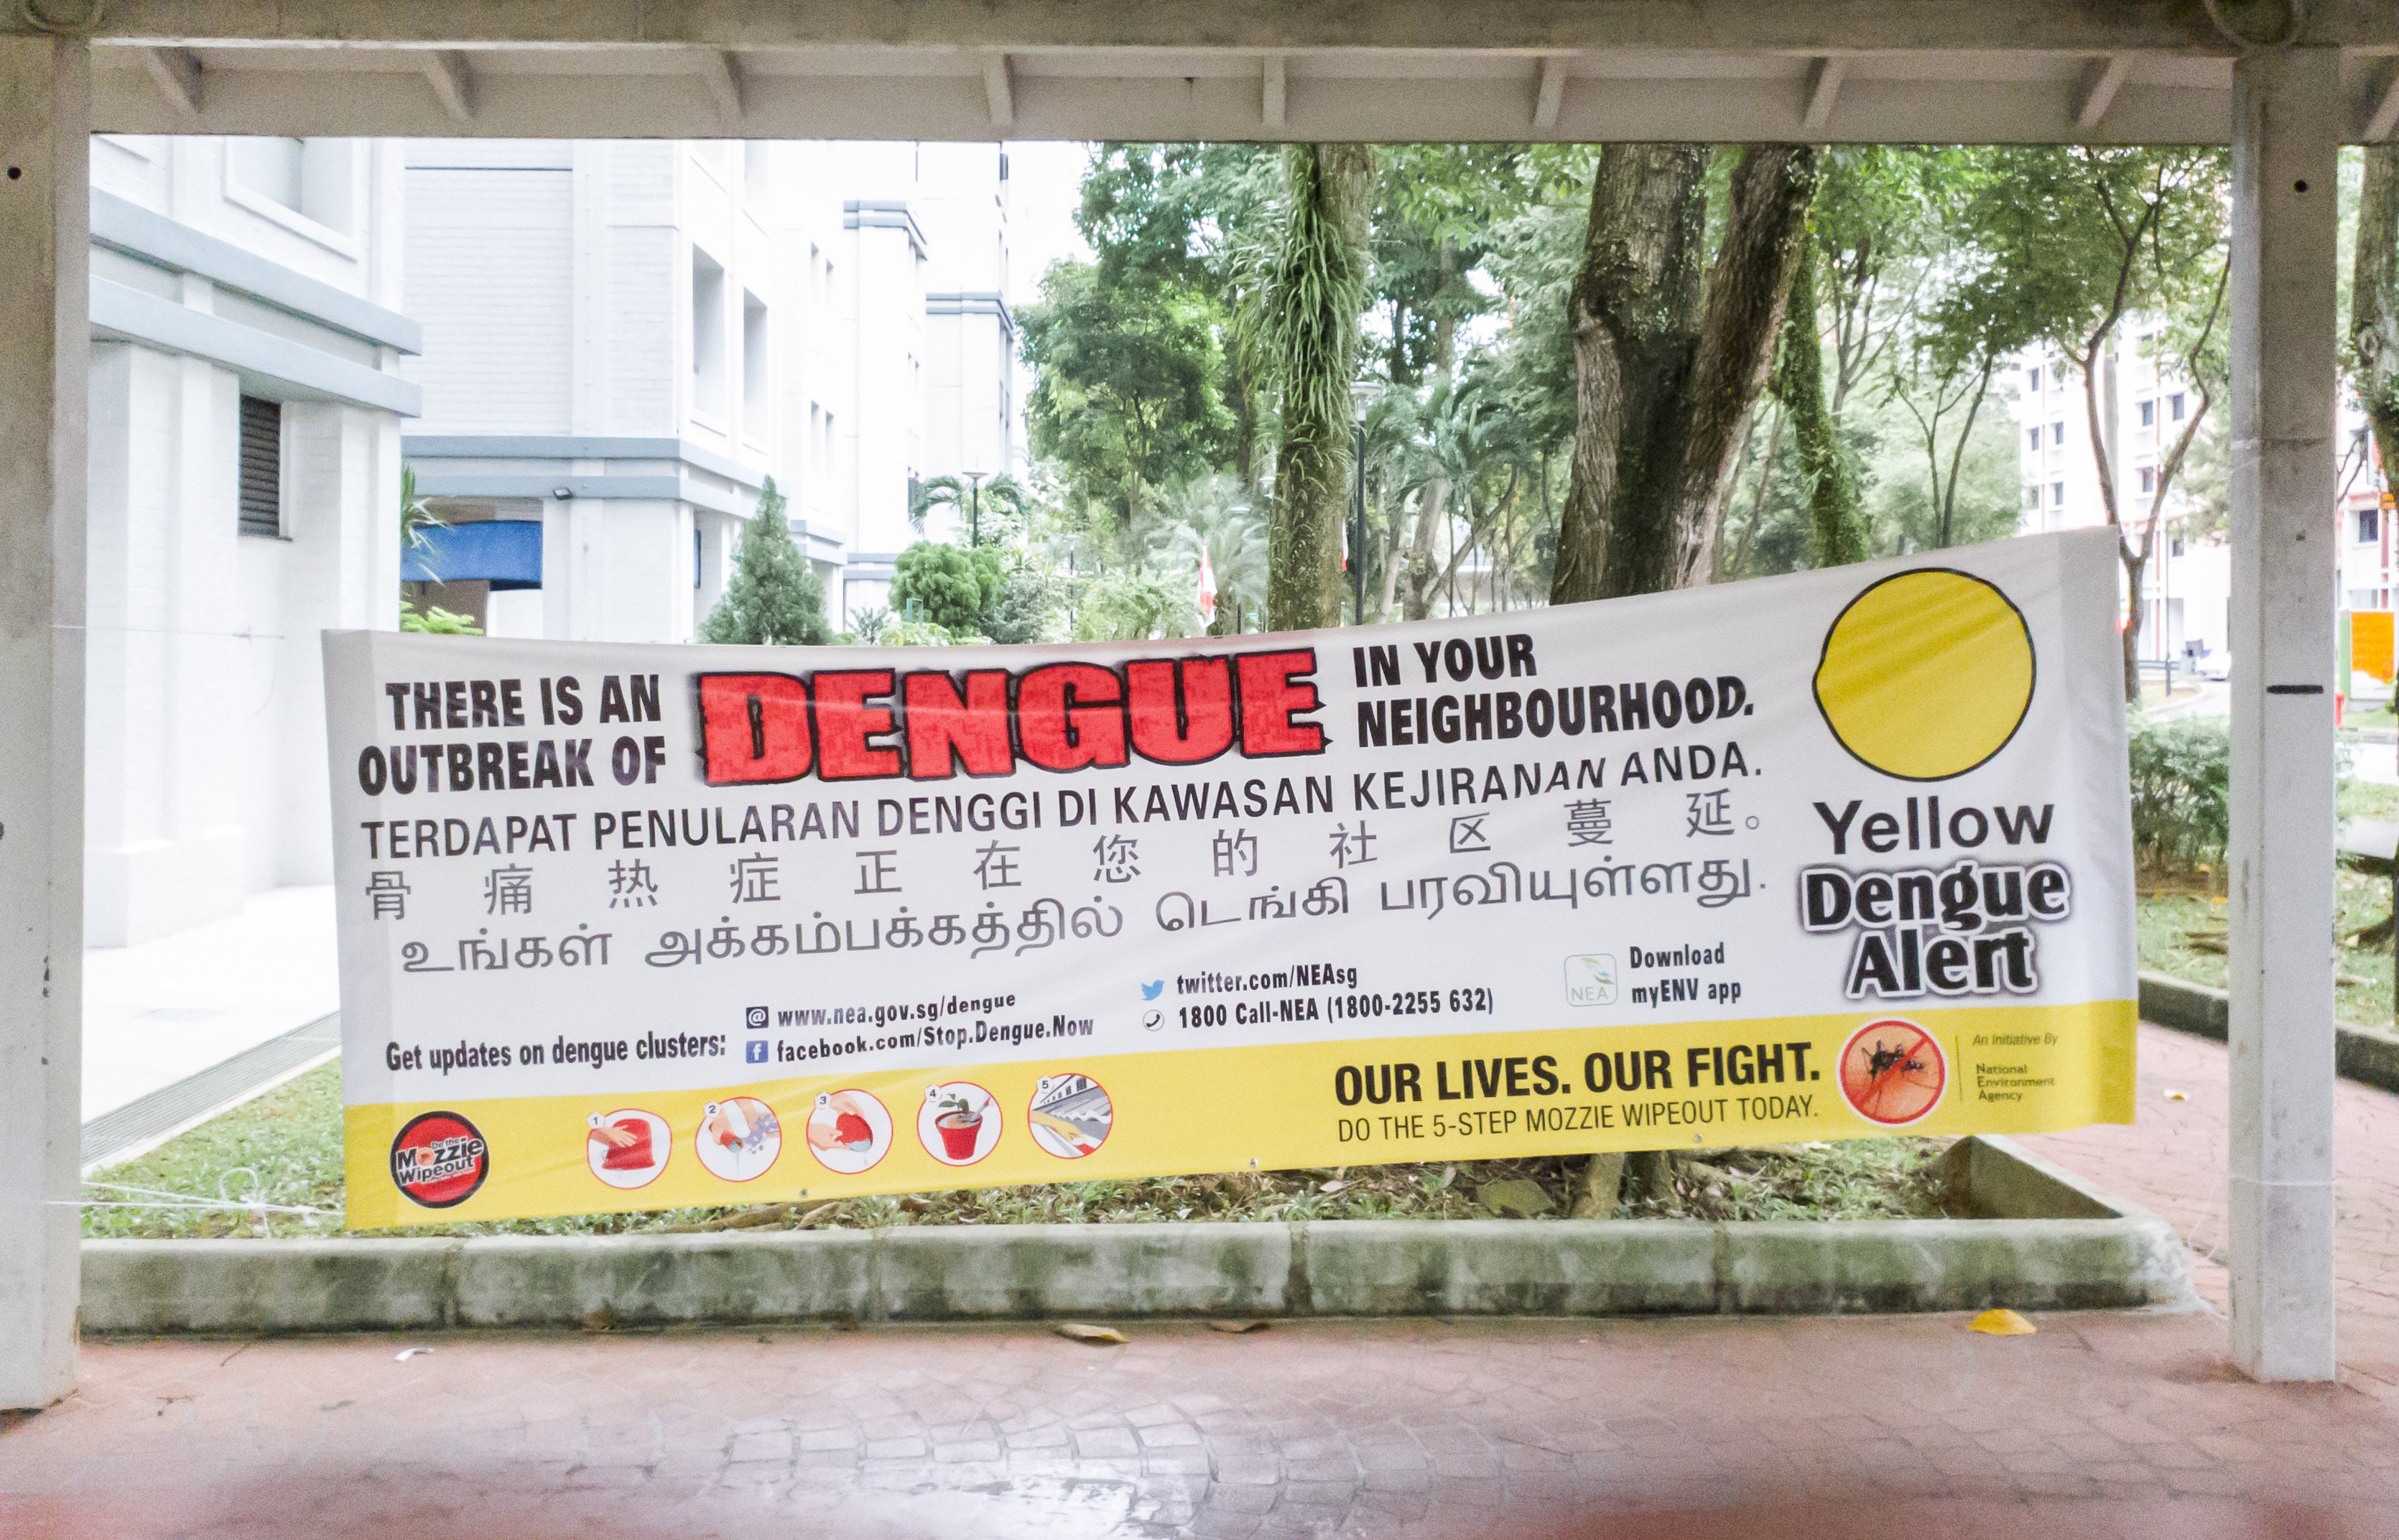 NEA Dengue Banner in Neighbourhoods